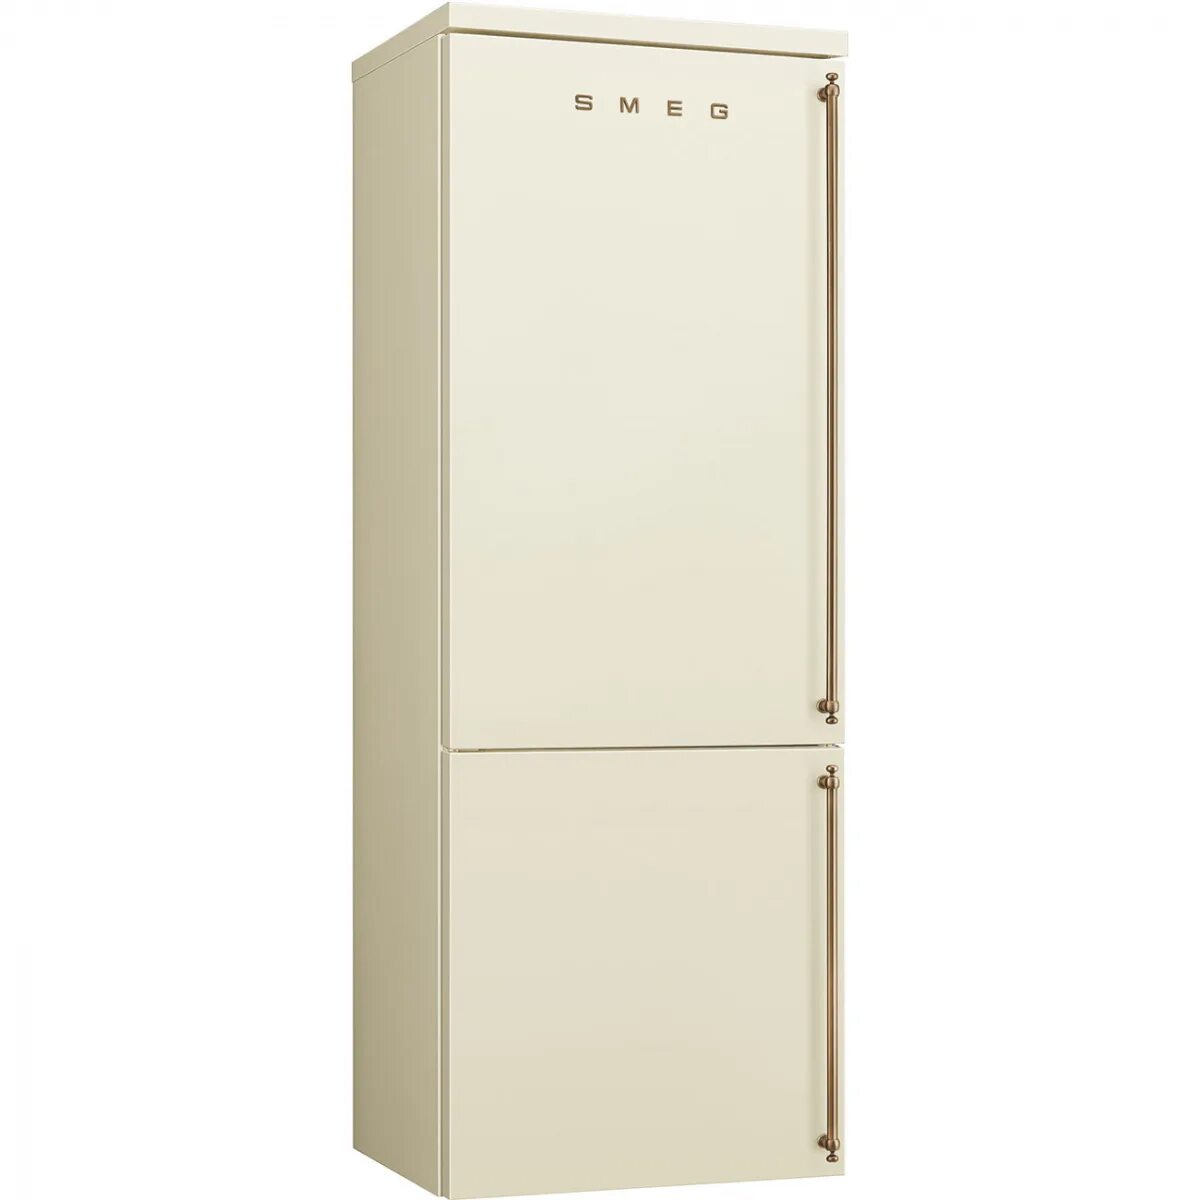 Холодильник Sharp SJ-xe59pmwh. Холодильник Smeg fa8003pos. Sharp SJ-xe55pmbe. Холодильники Smeg fa860p. Холодильник средний купить